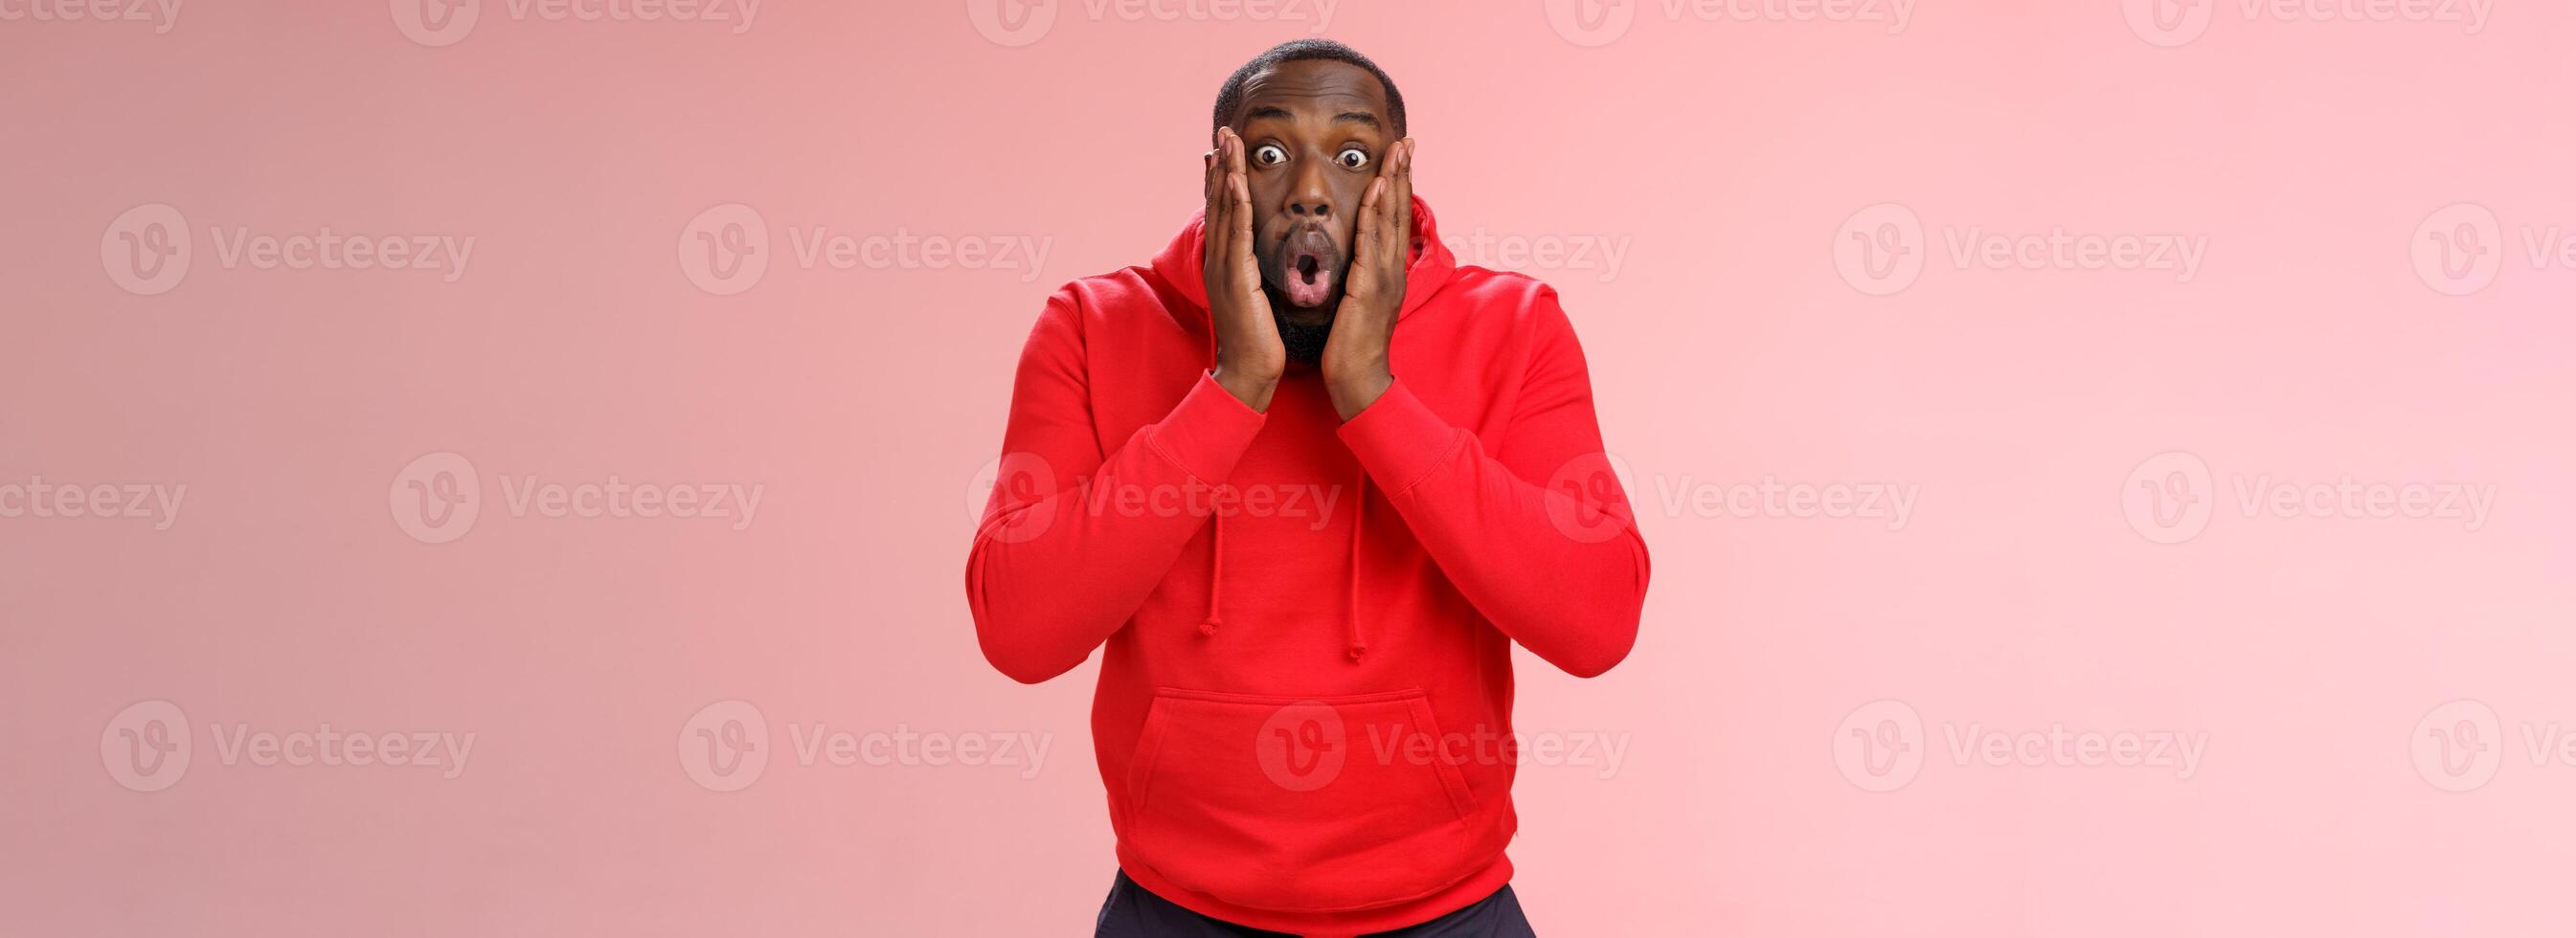 Wow otrolig. porträtt imponerad överraskad afrikan-amerikan skäggig kille i röd luvtröja hopfällbar mun böjning bredda ögon chockade ser otrolig erbjudande stående roade upphetsad, rosa bakgrund foto